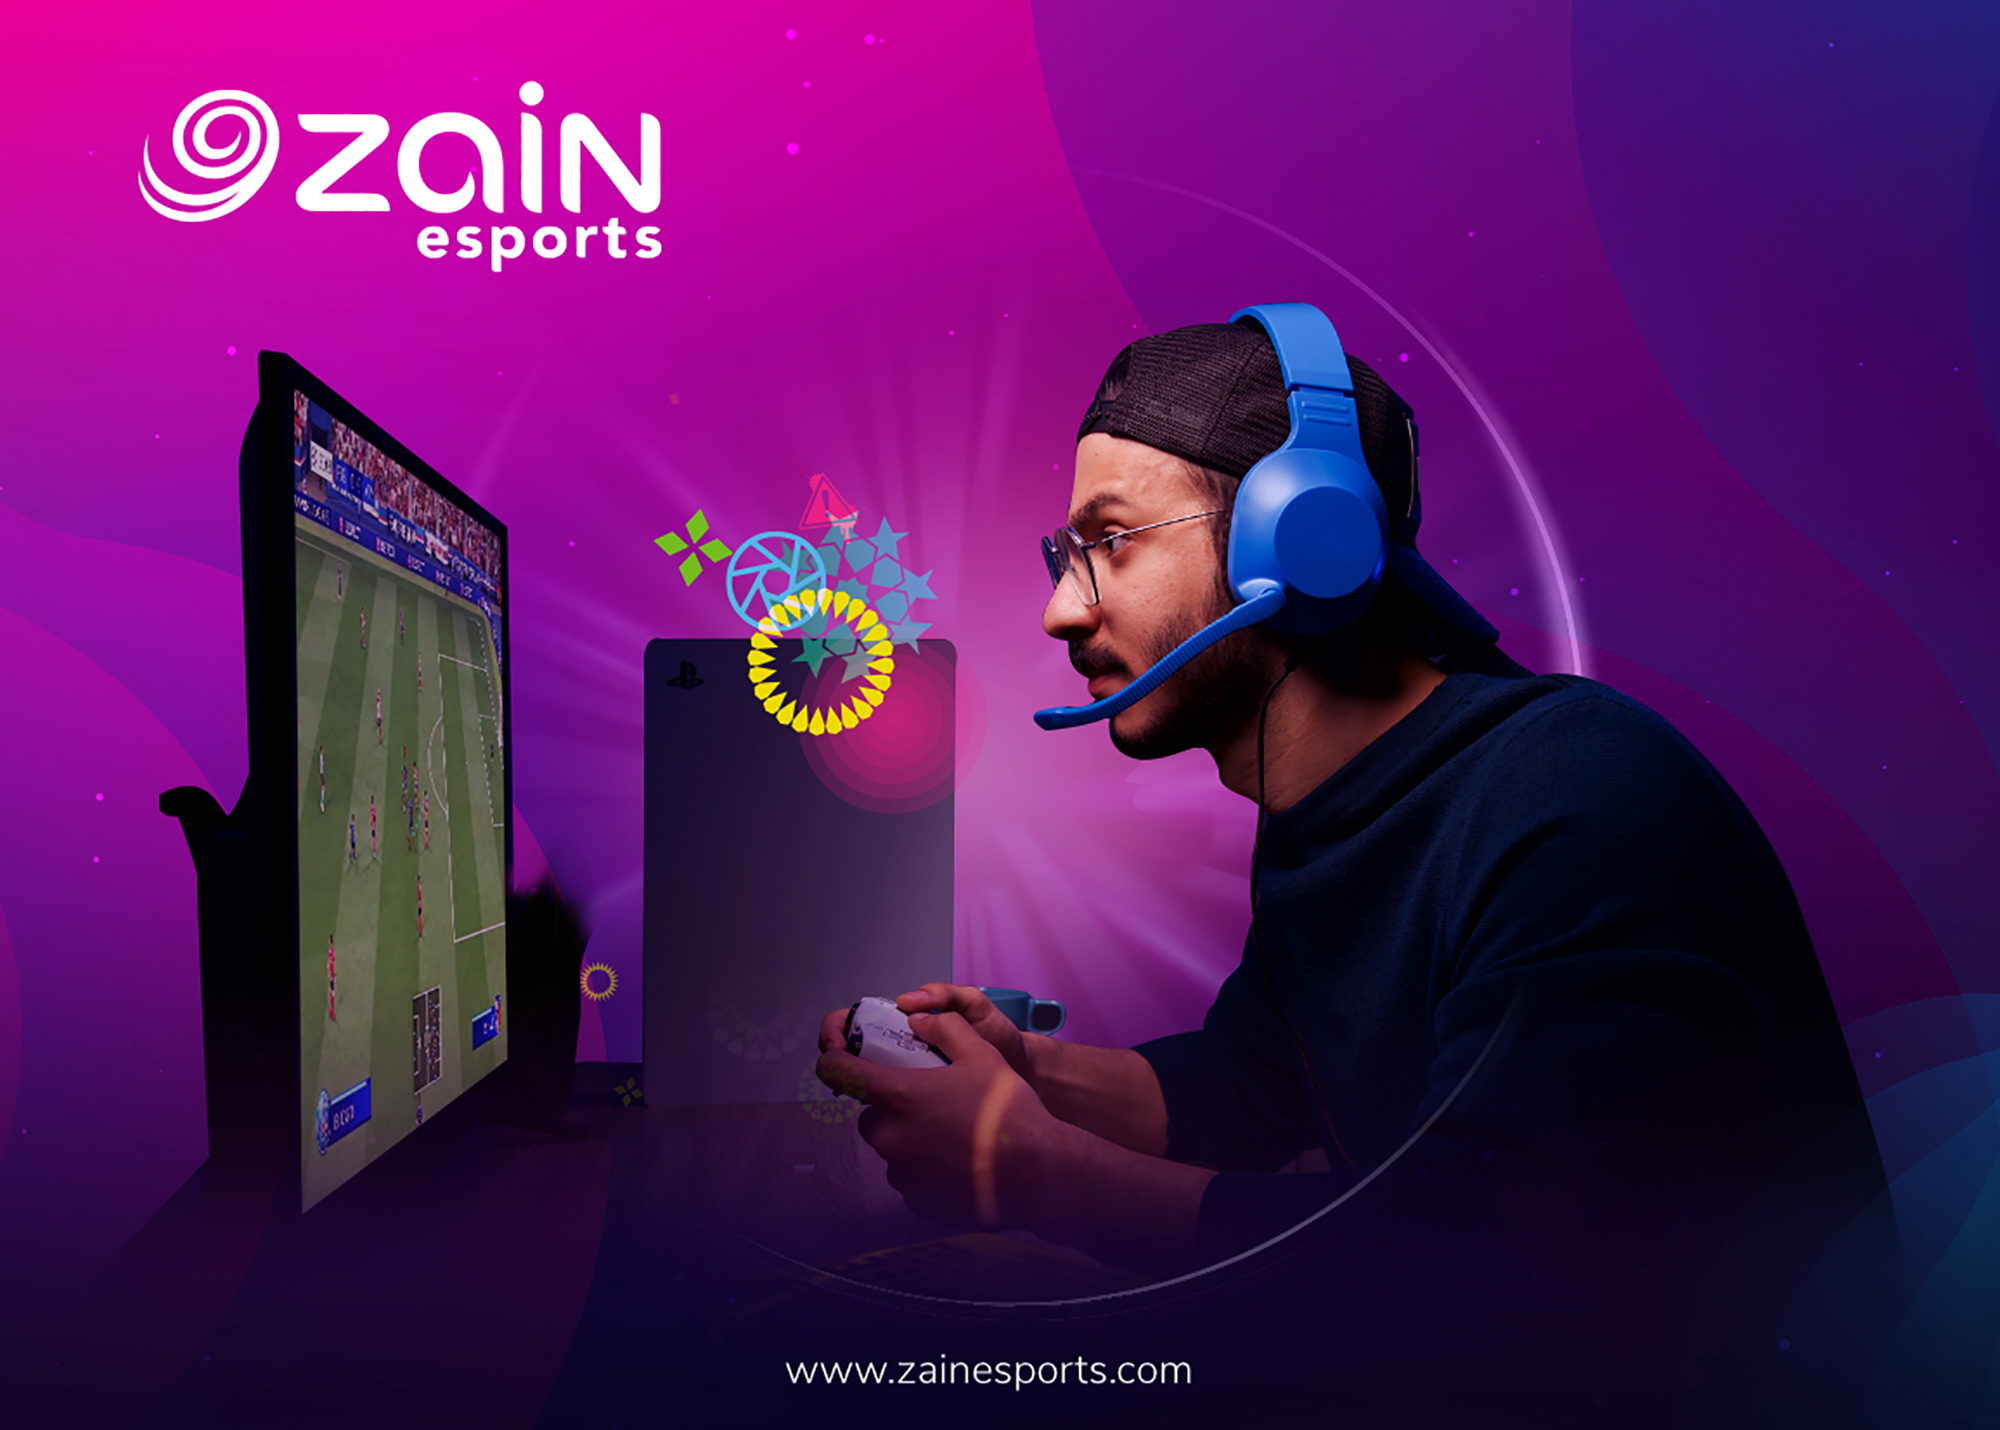 《زين》 تطلق علامتها التجارية Zain esports كقوة إقليمية جديدة في الرياضة الإلكترونية